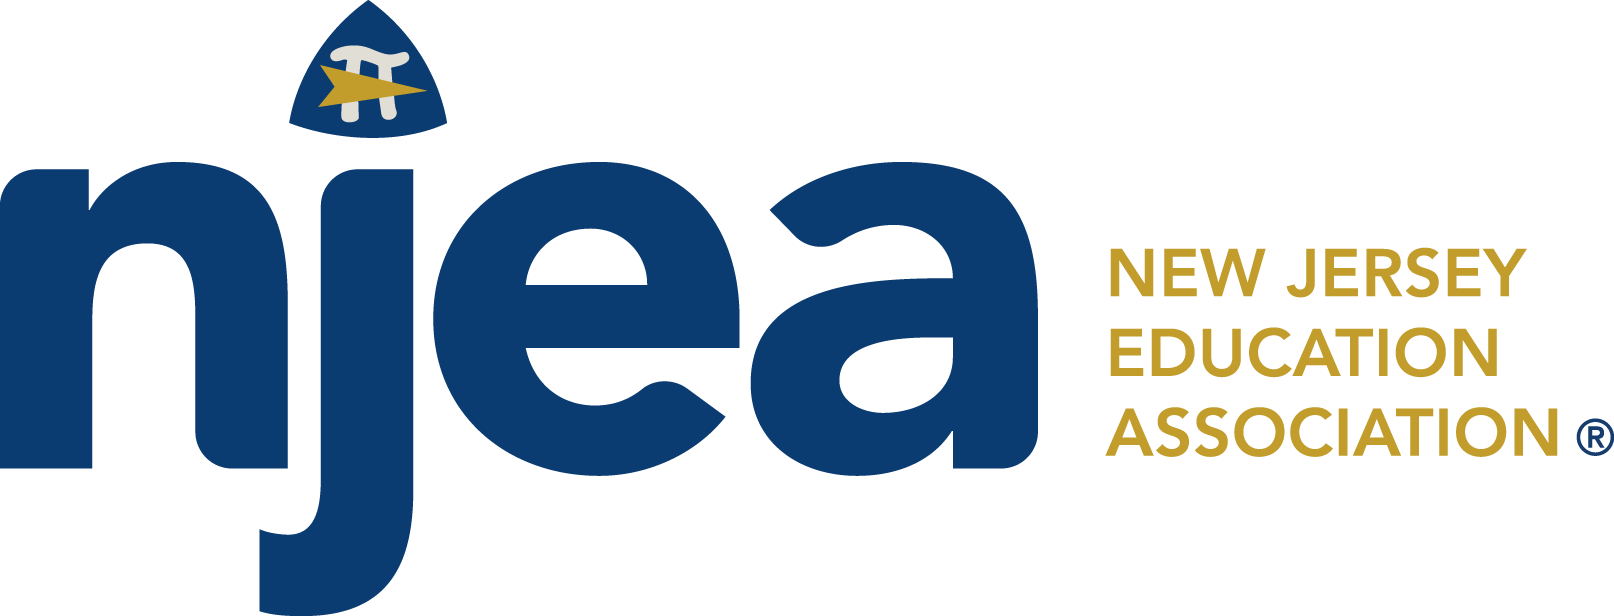 NJEA logo